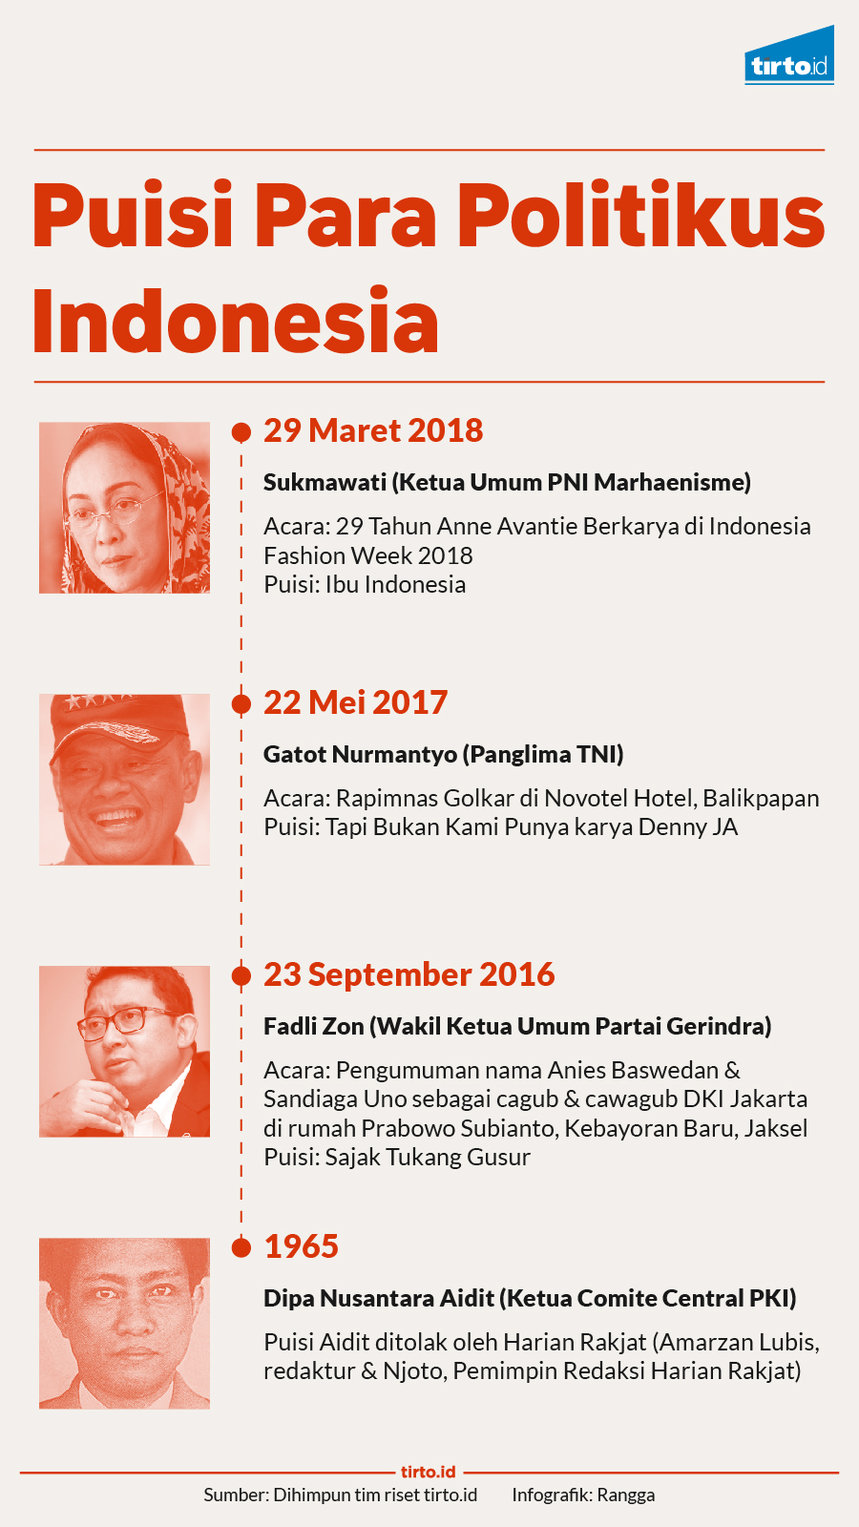 Infografik puisi para politikus indonesia